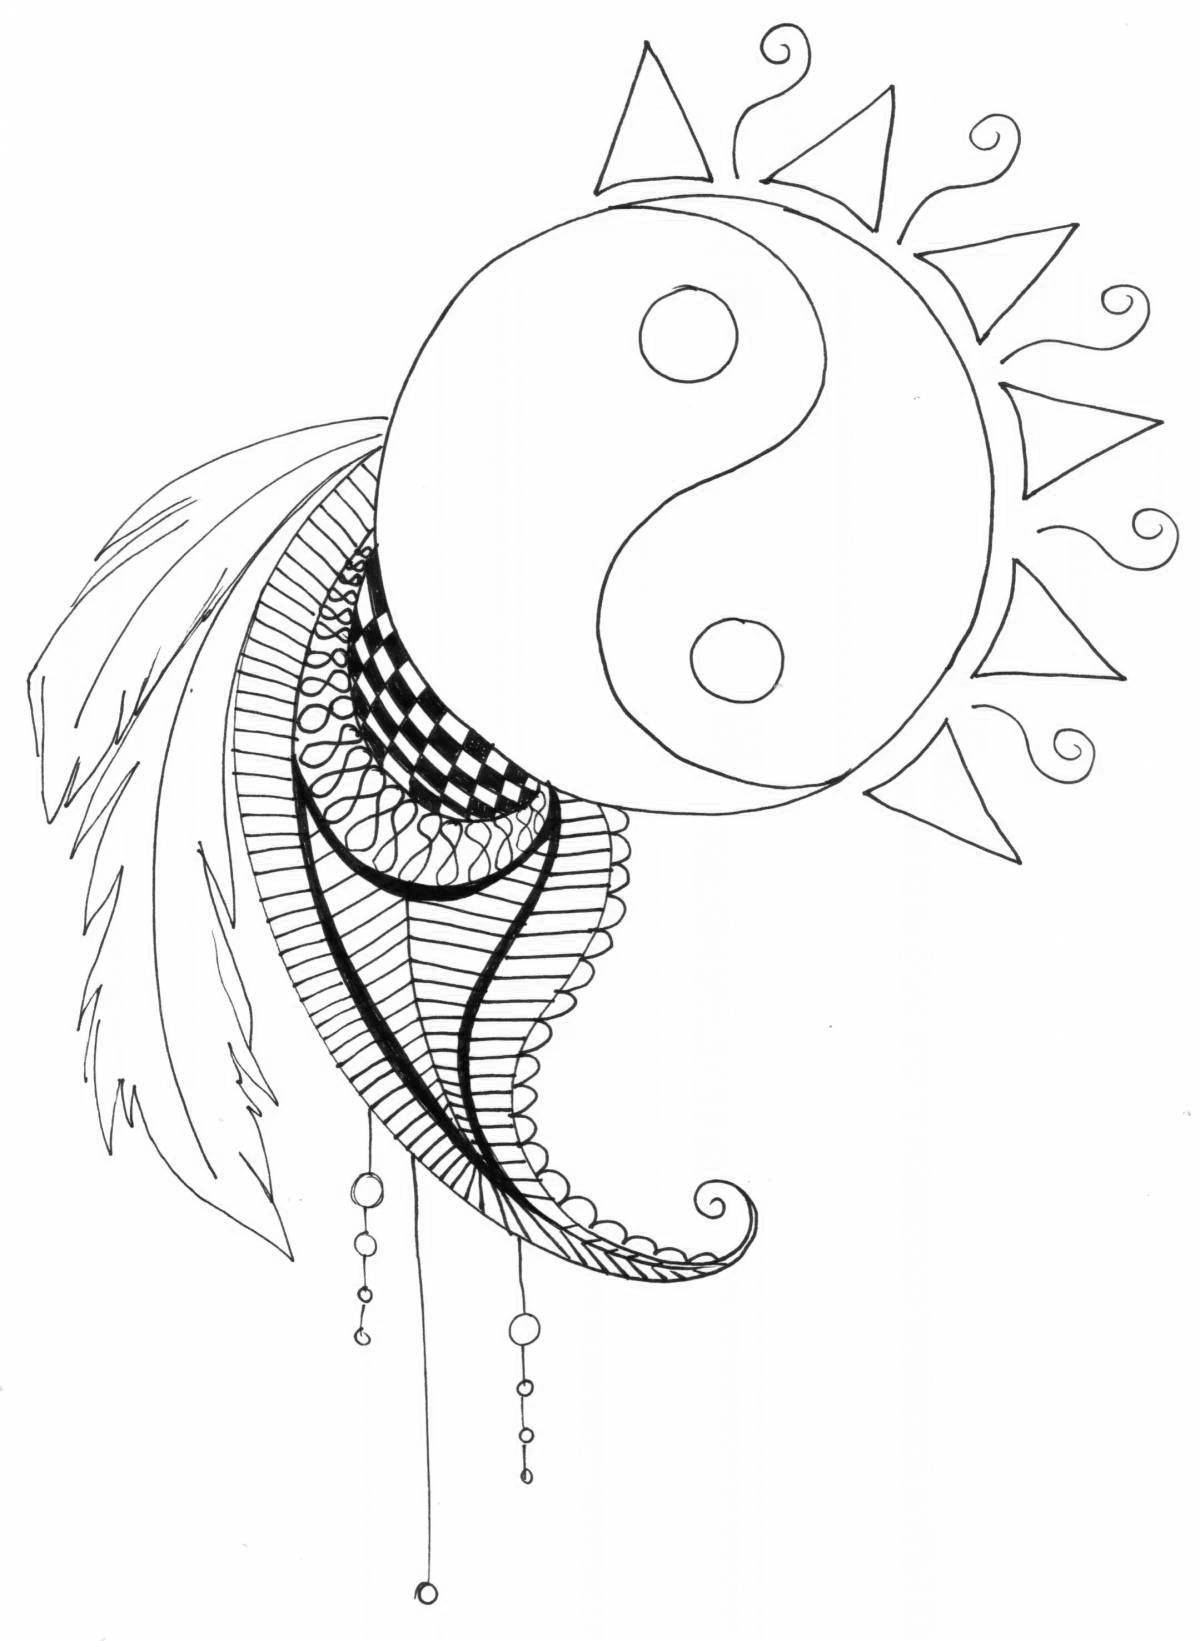 Charming yin yang coloring page